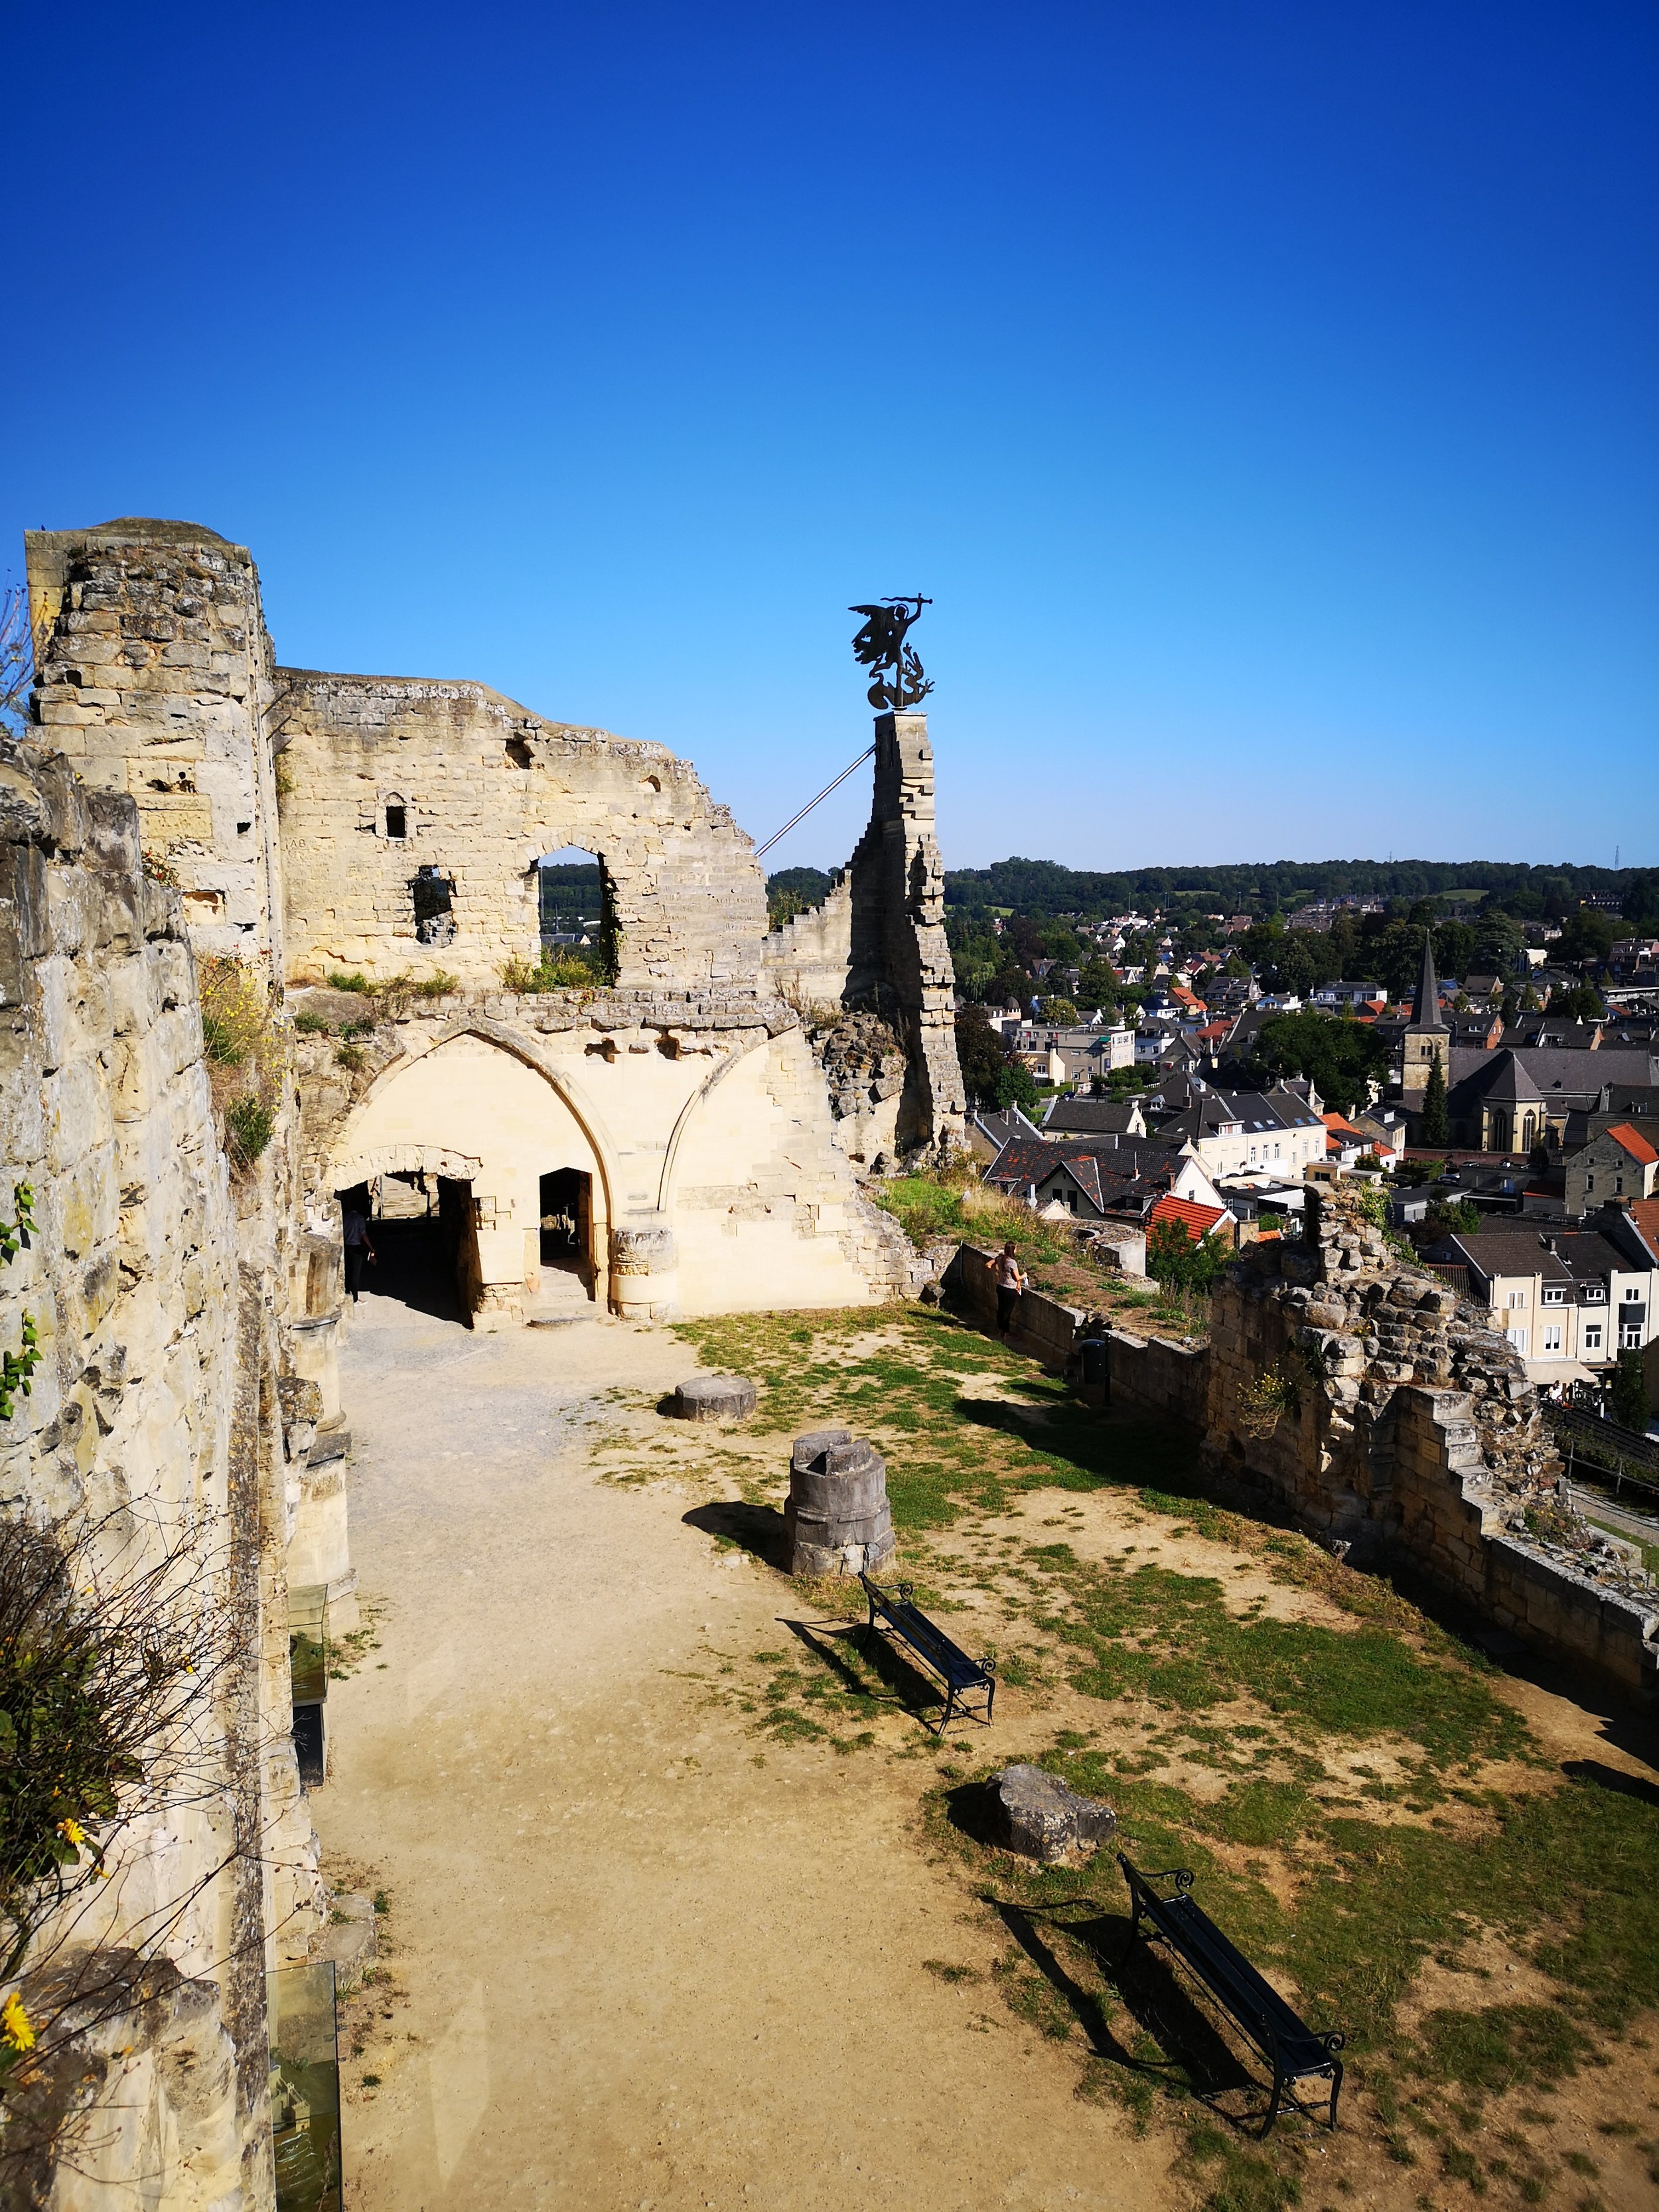 The Valkeburg castle ruin